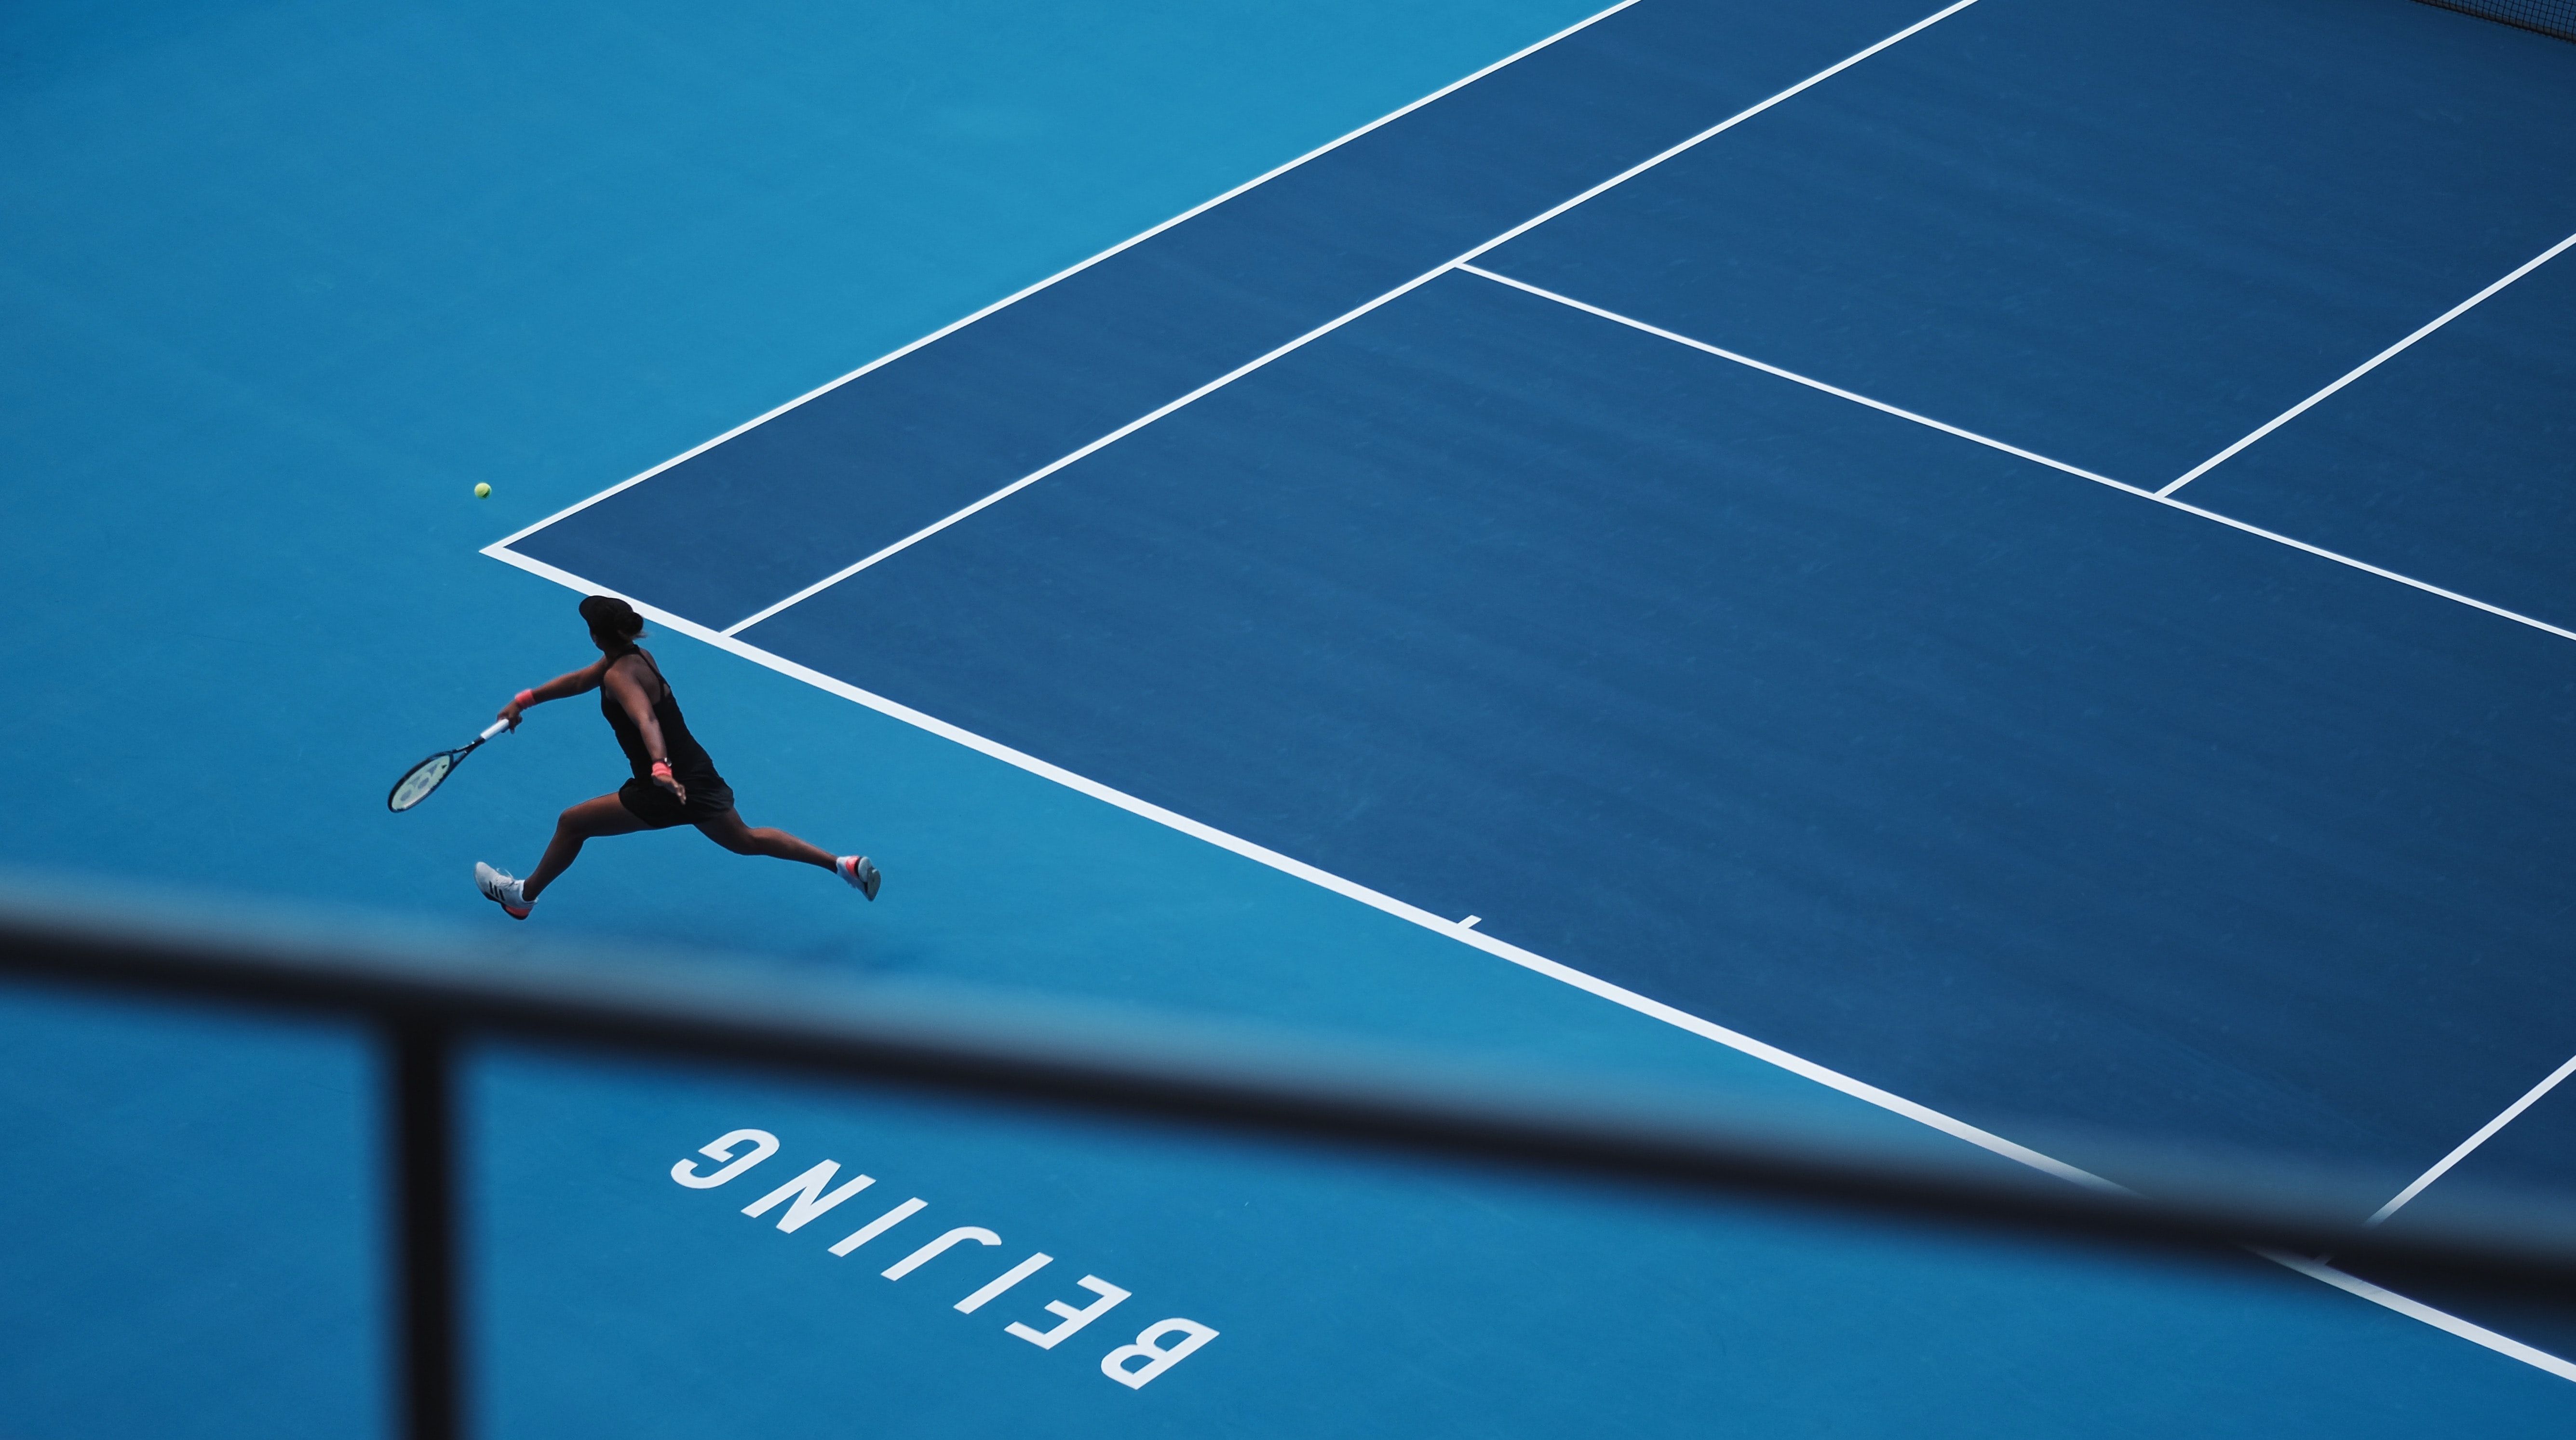 A tennis player on a blue court.